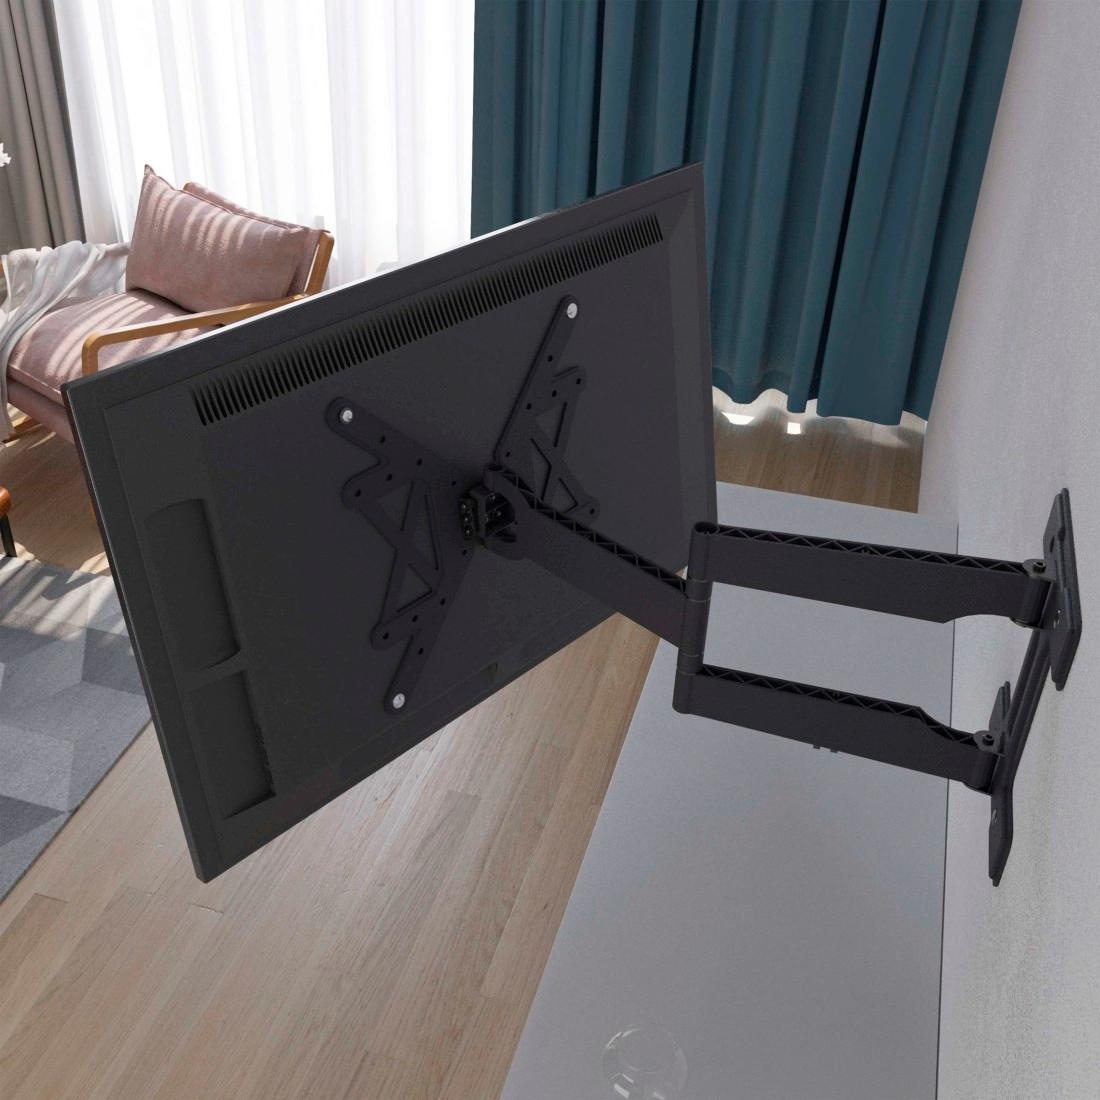 Hama TV-Wandhalterung »TV-Wandhalter Arm bis 72cm ausziehbar 32-65 Zoll/81-165cm  bis 50kg«, bis 165 cm Zoll auf Raten kaufen